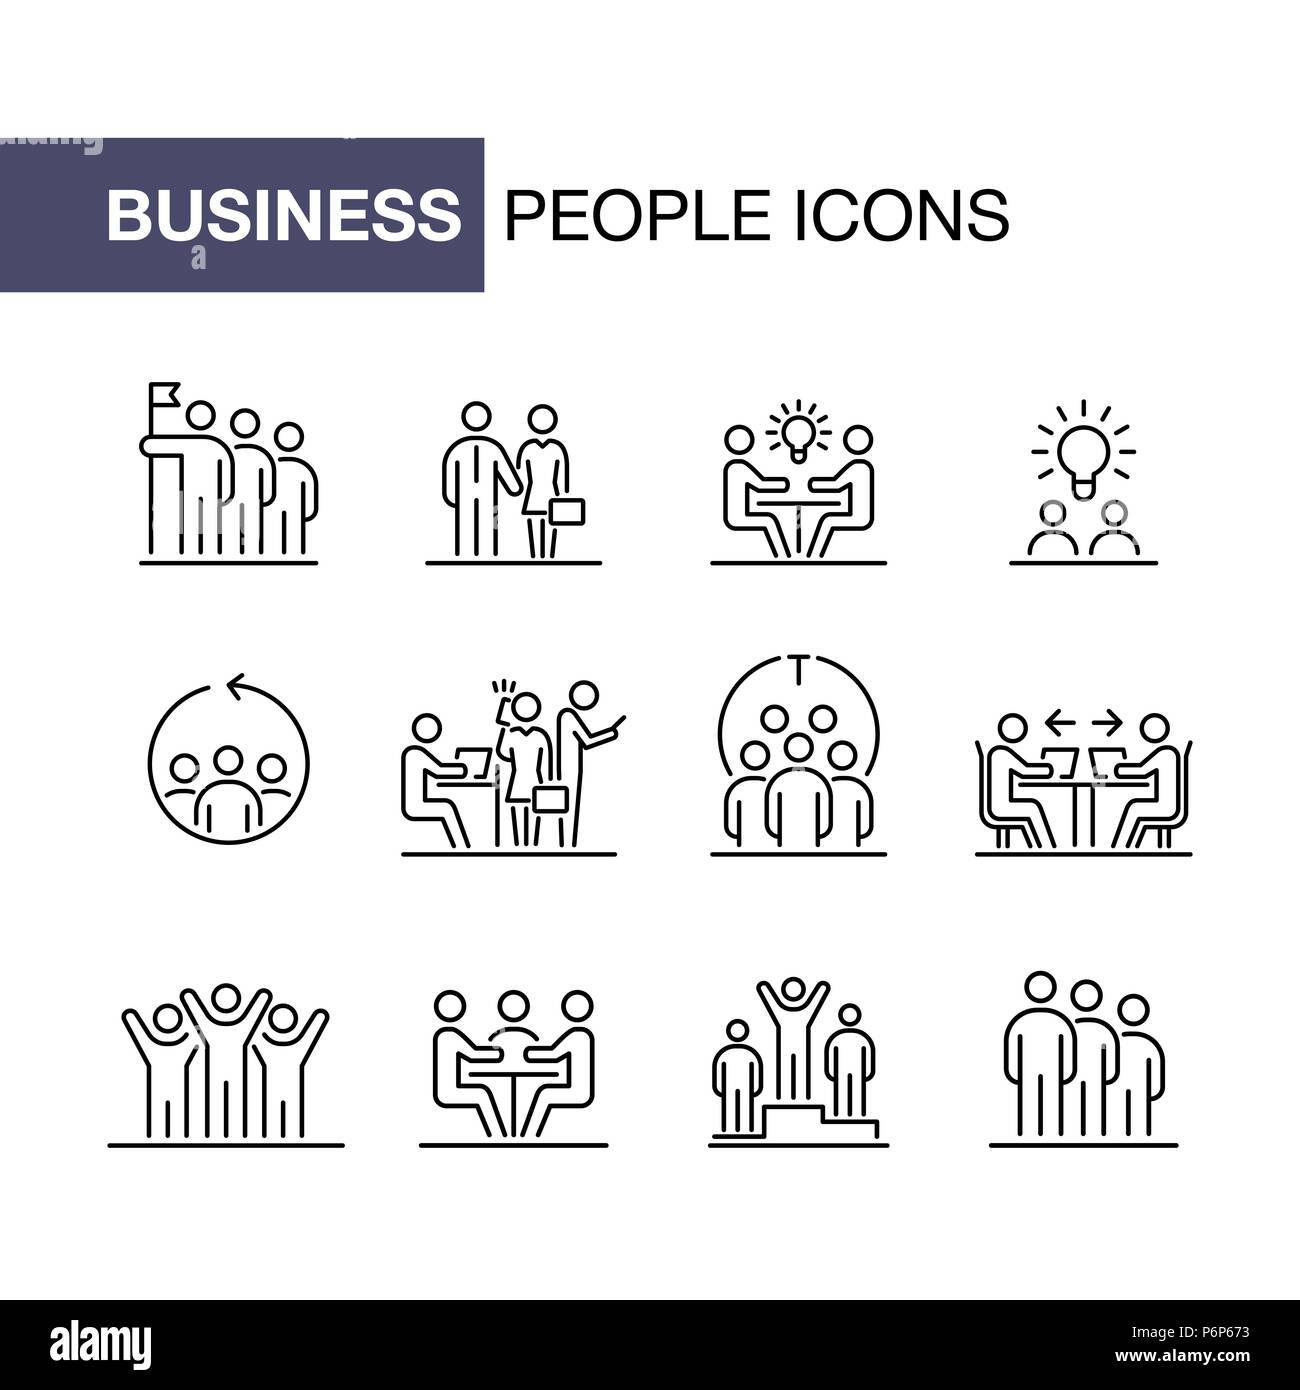 Teamwork business people icon set UI simple line flat illustration. Stock Vector